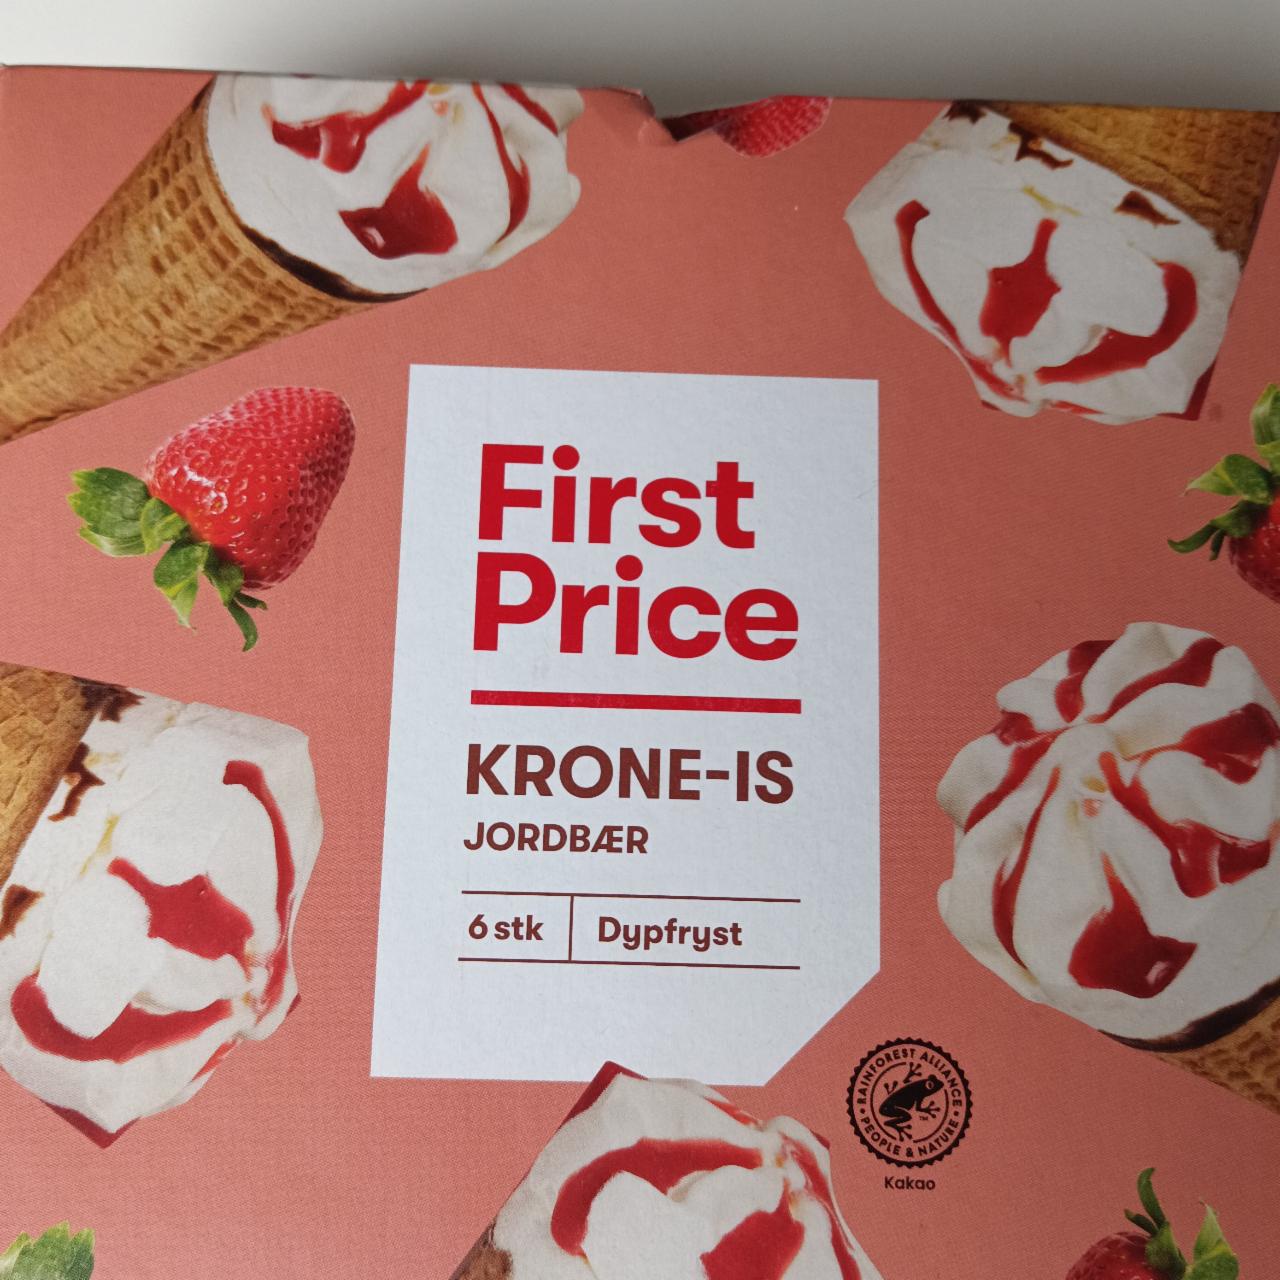 Фото - Морозиво krone-is jordbær 6stk First Price